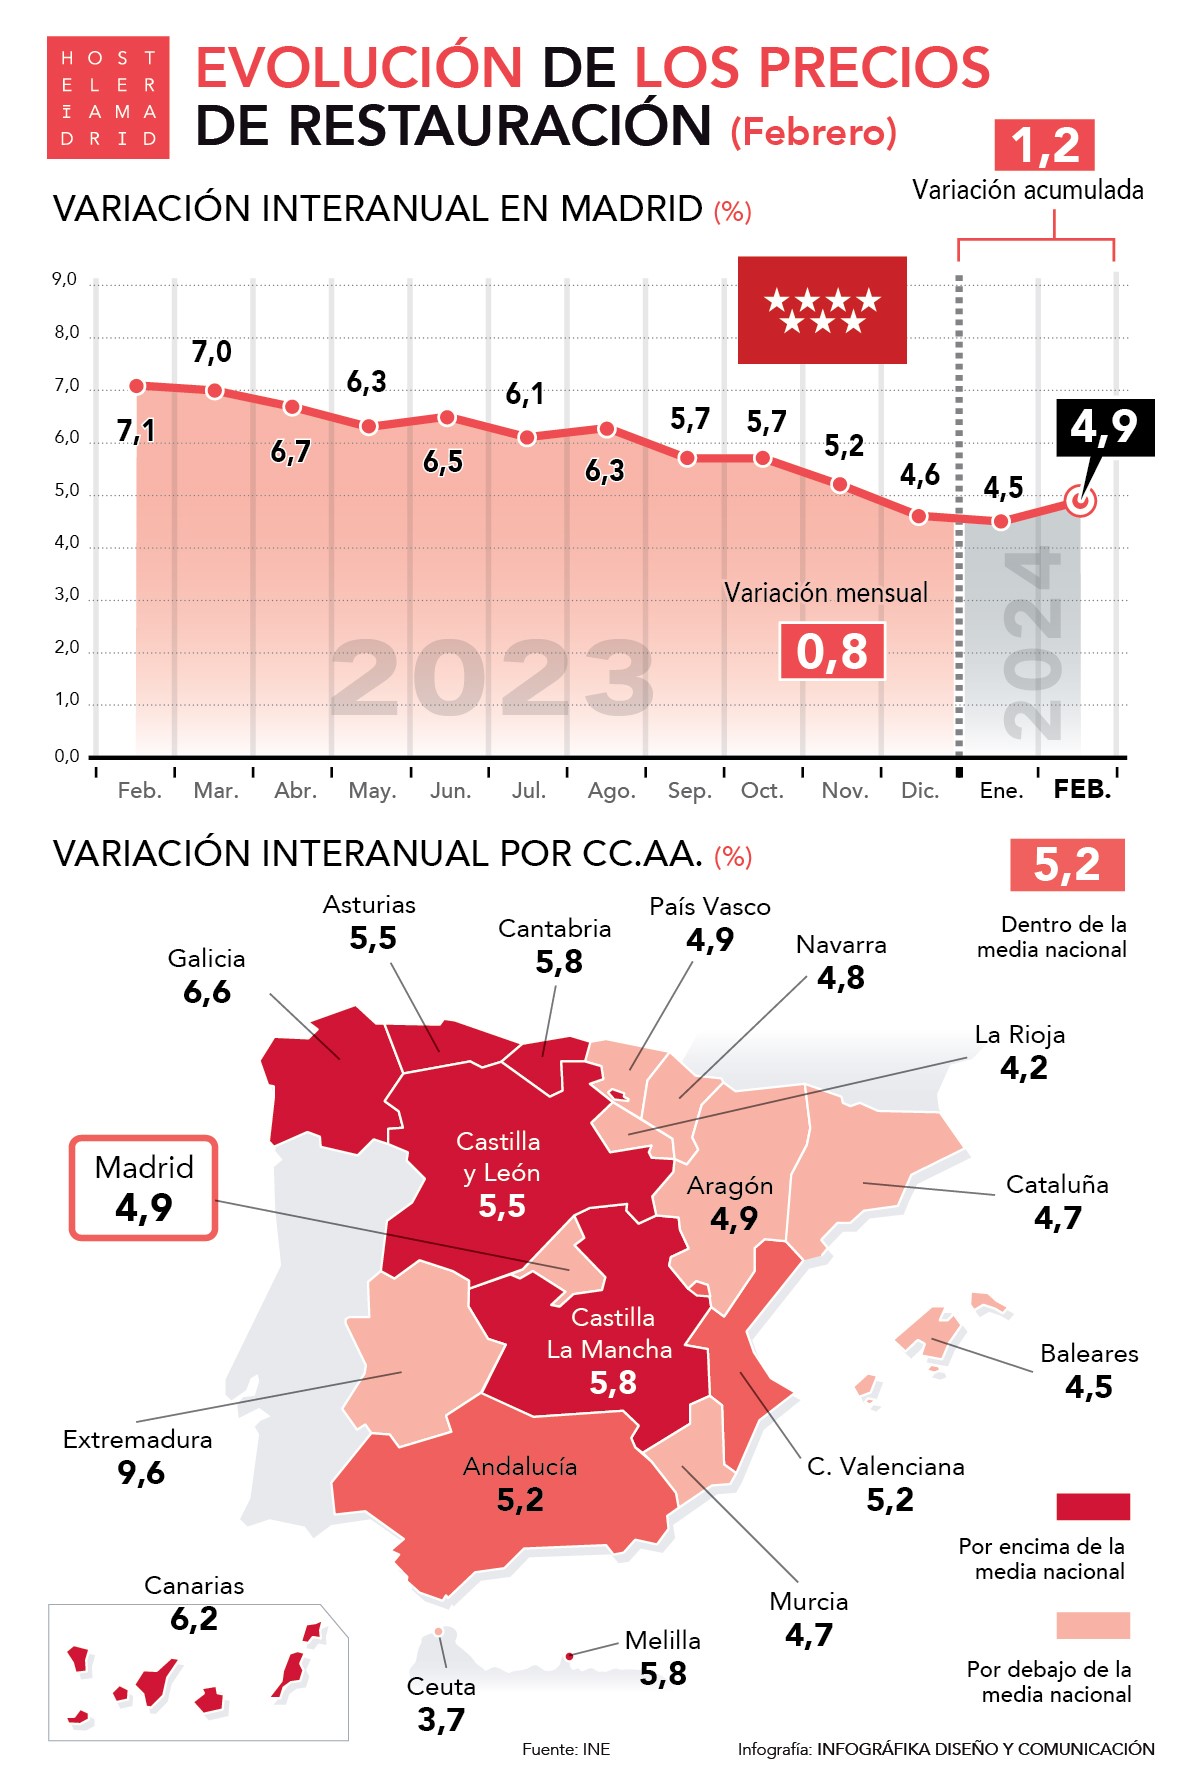 Los precios de restauración suben un 4,9% en Madrid en febrero - La Viña